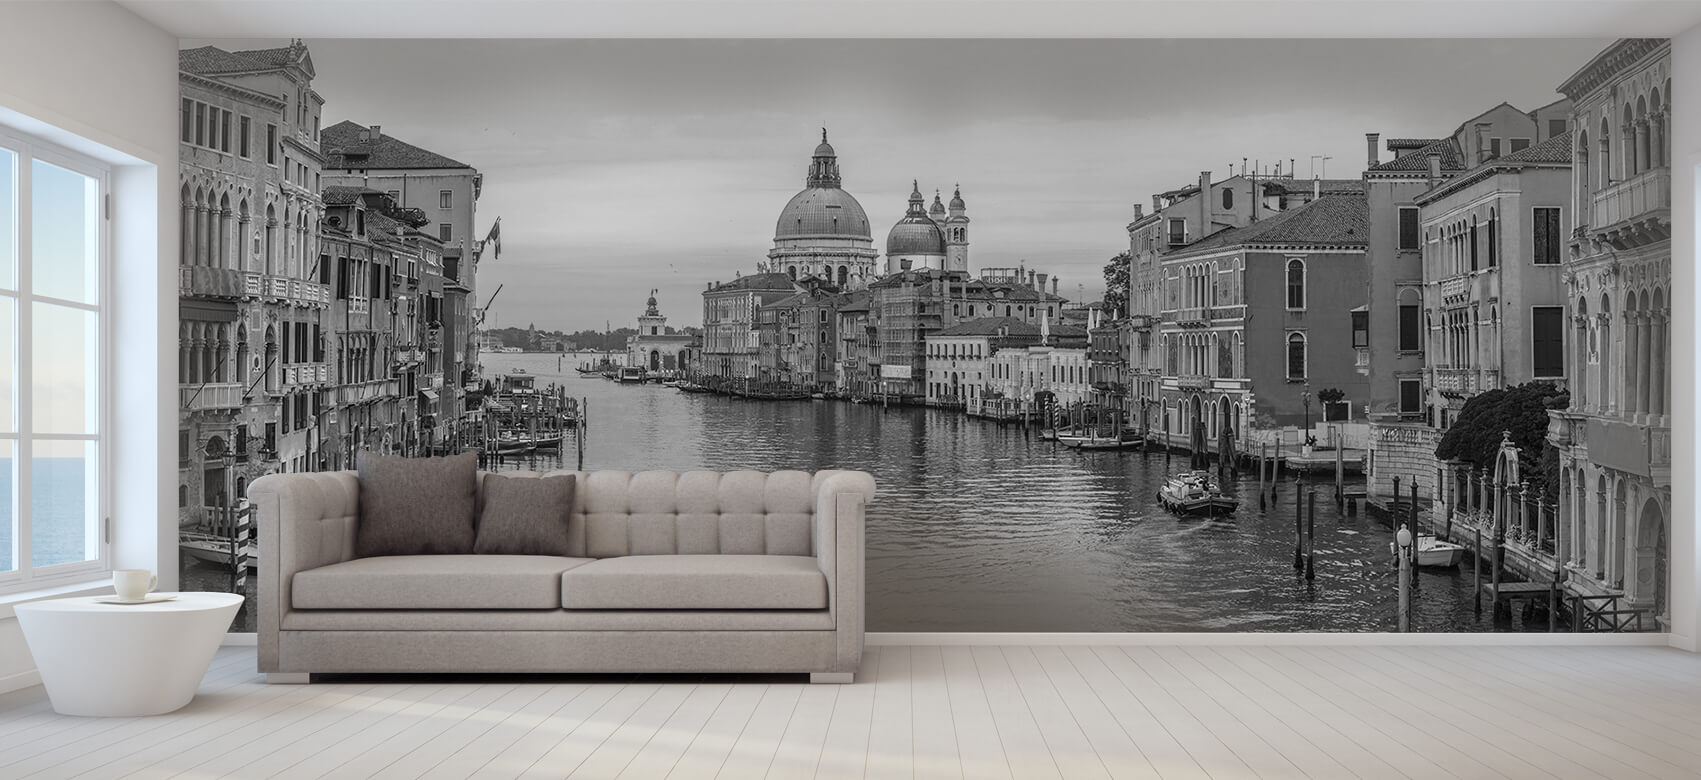 Ciudades - Papel pintado con Canal en Venecia - Salón 9